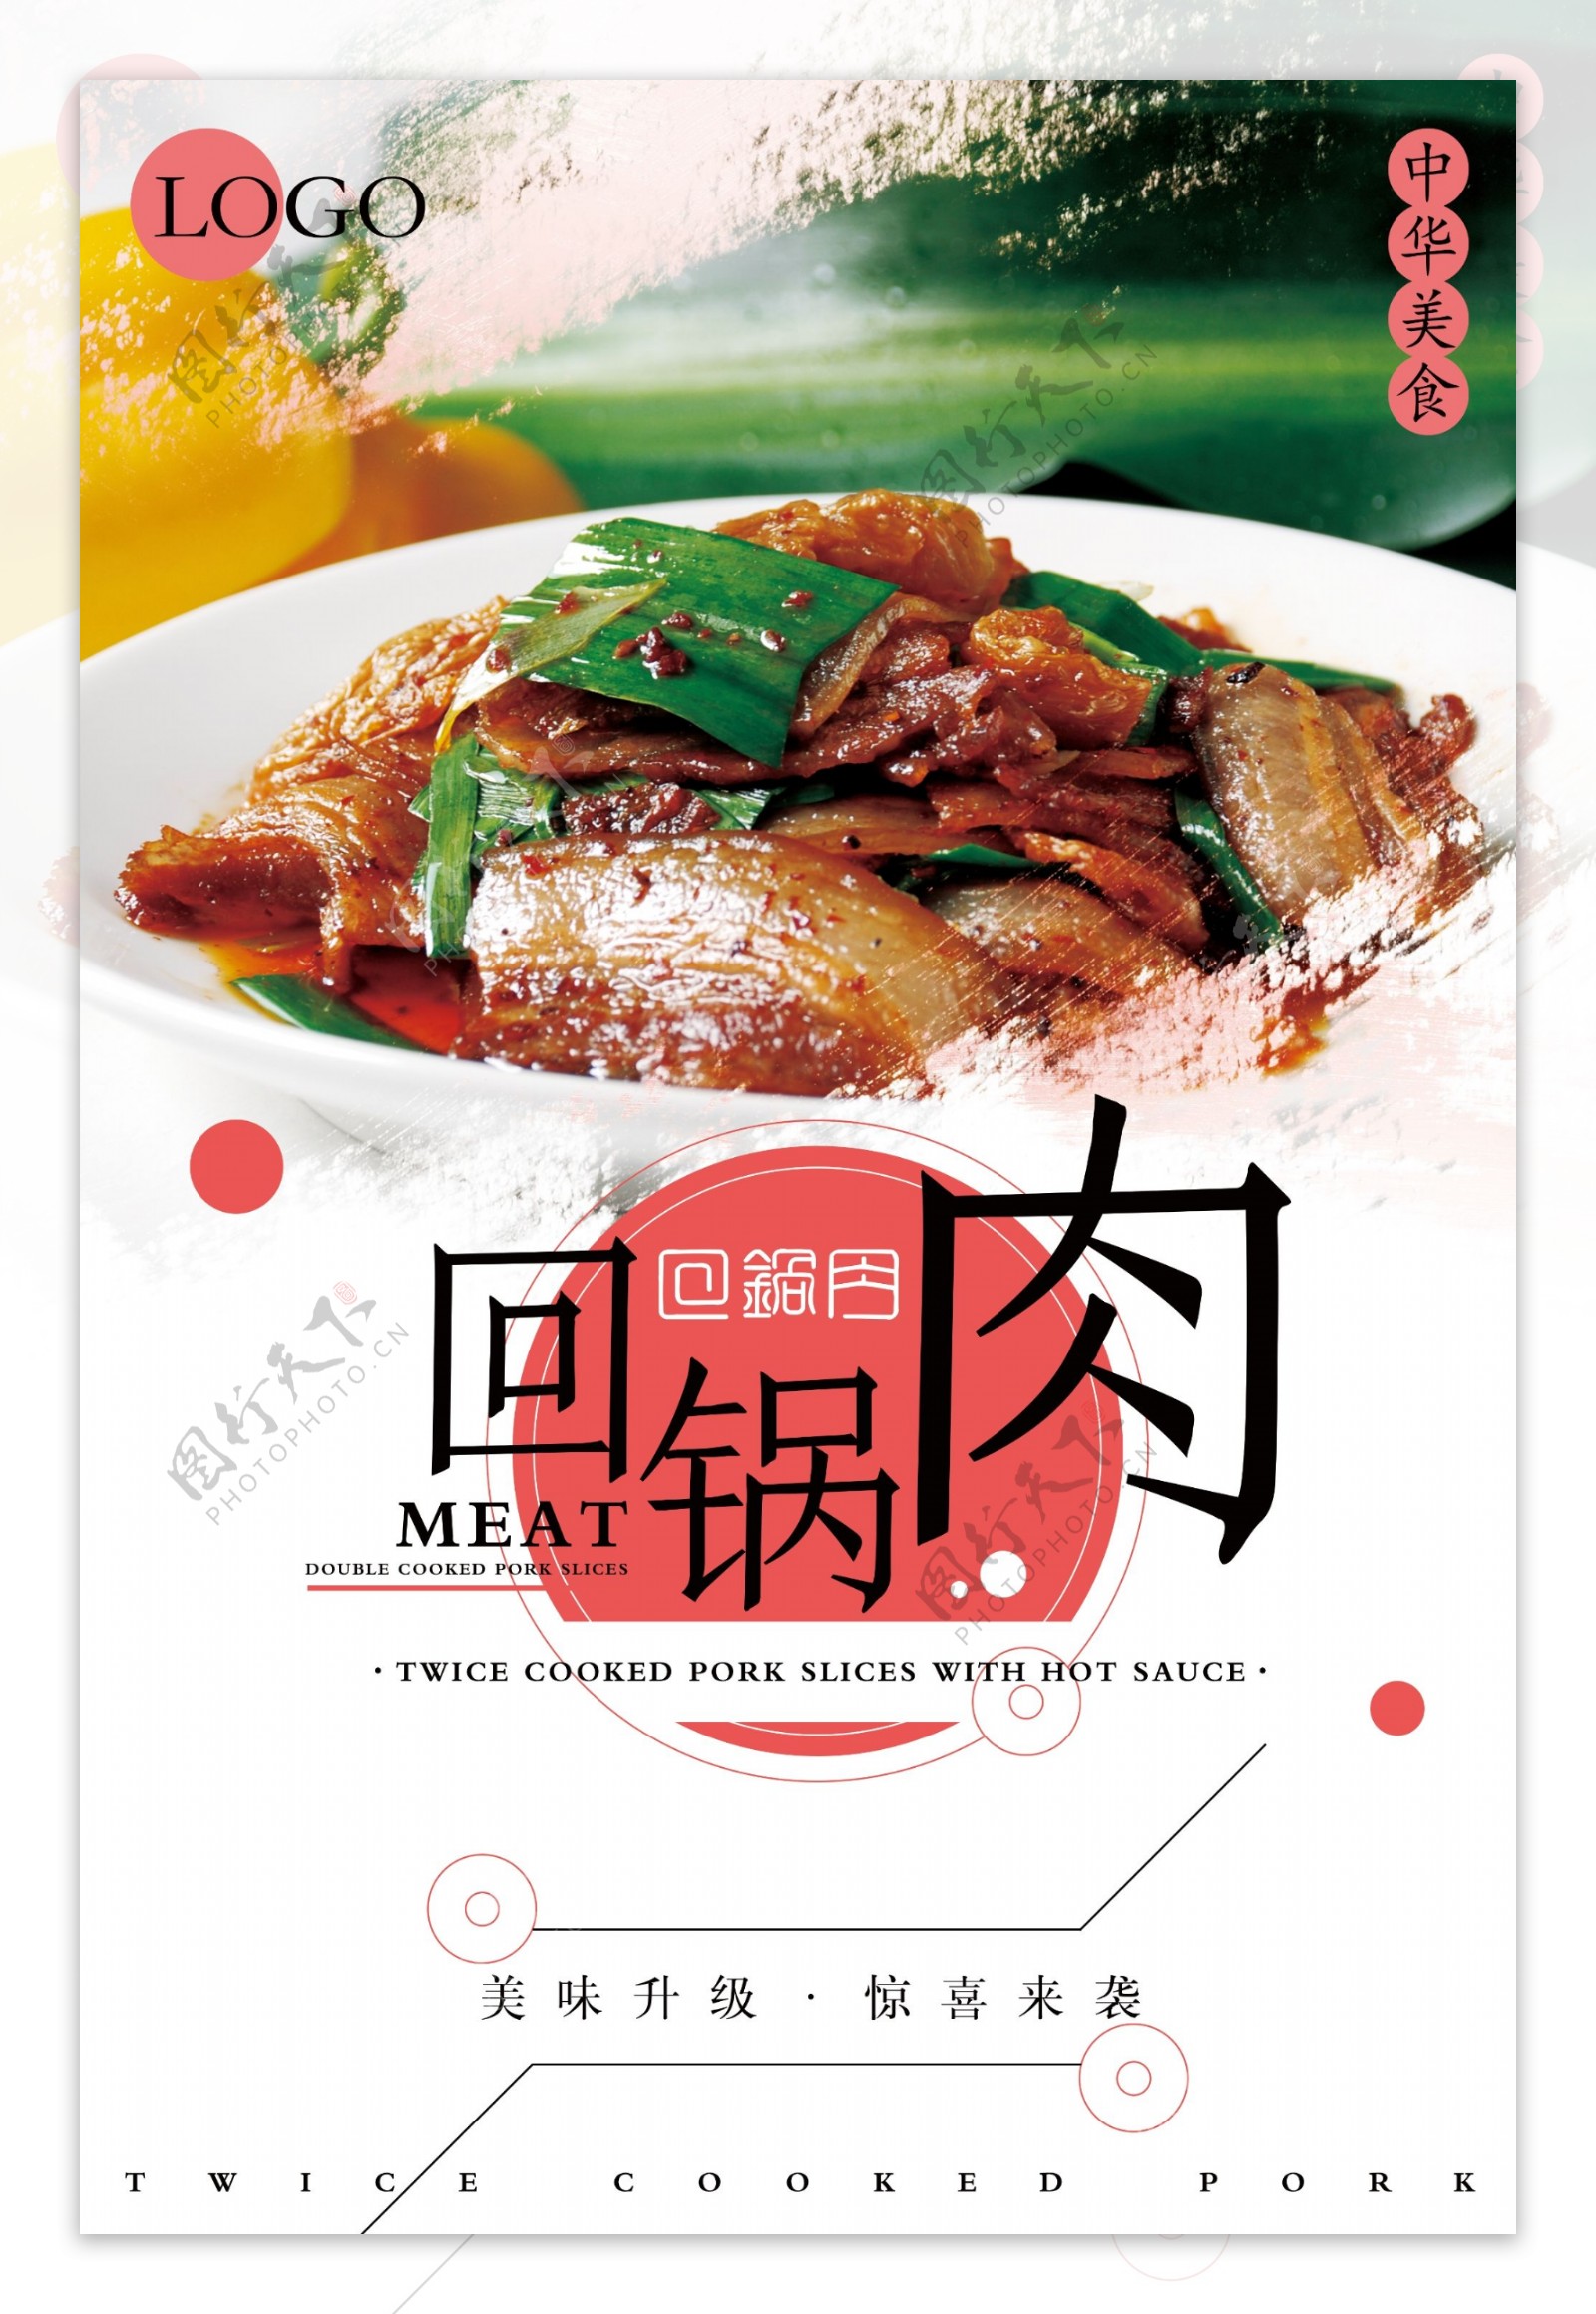 清新回锅肉宣传海报